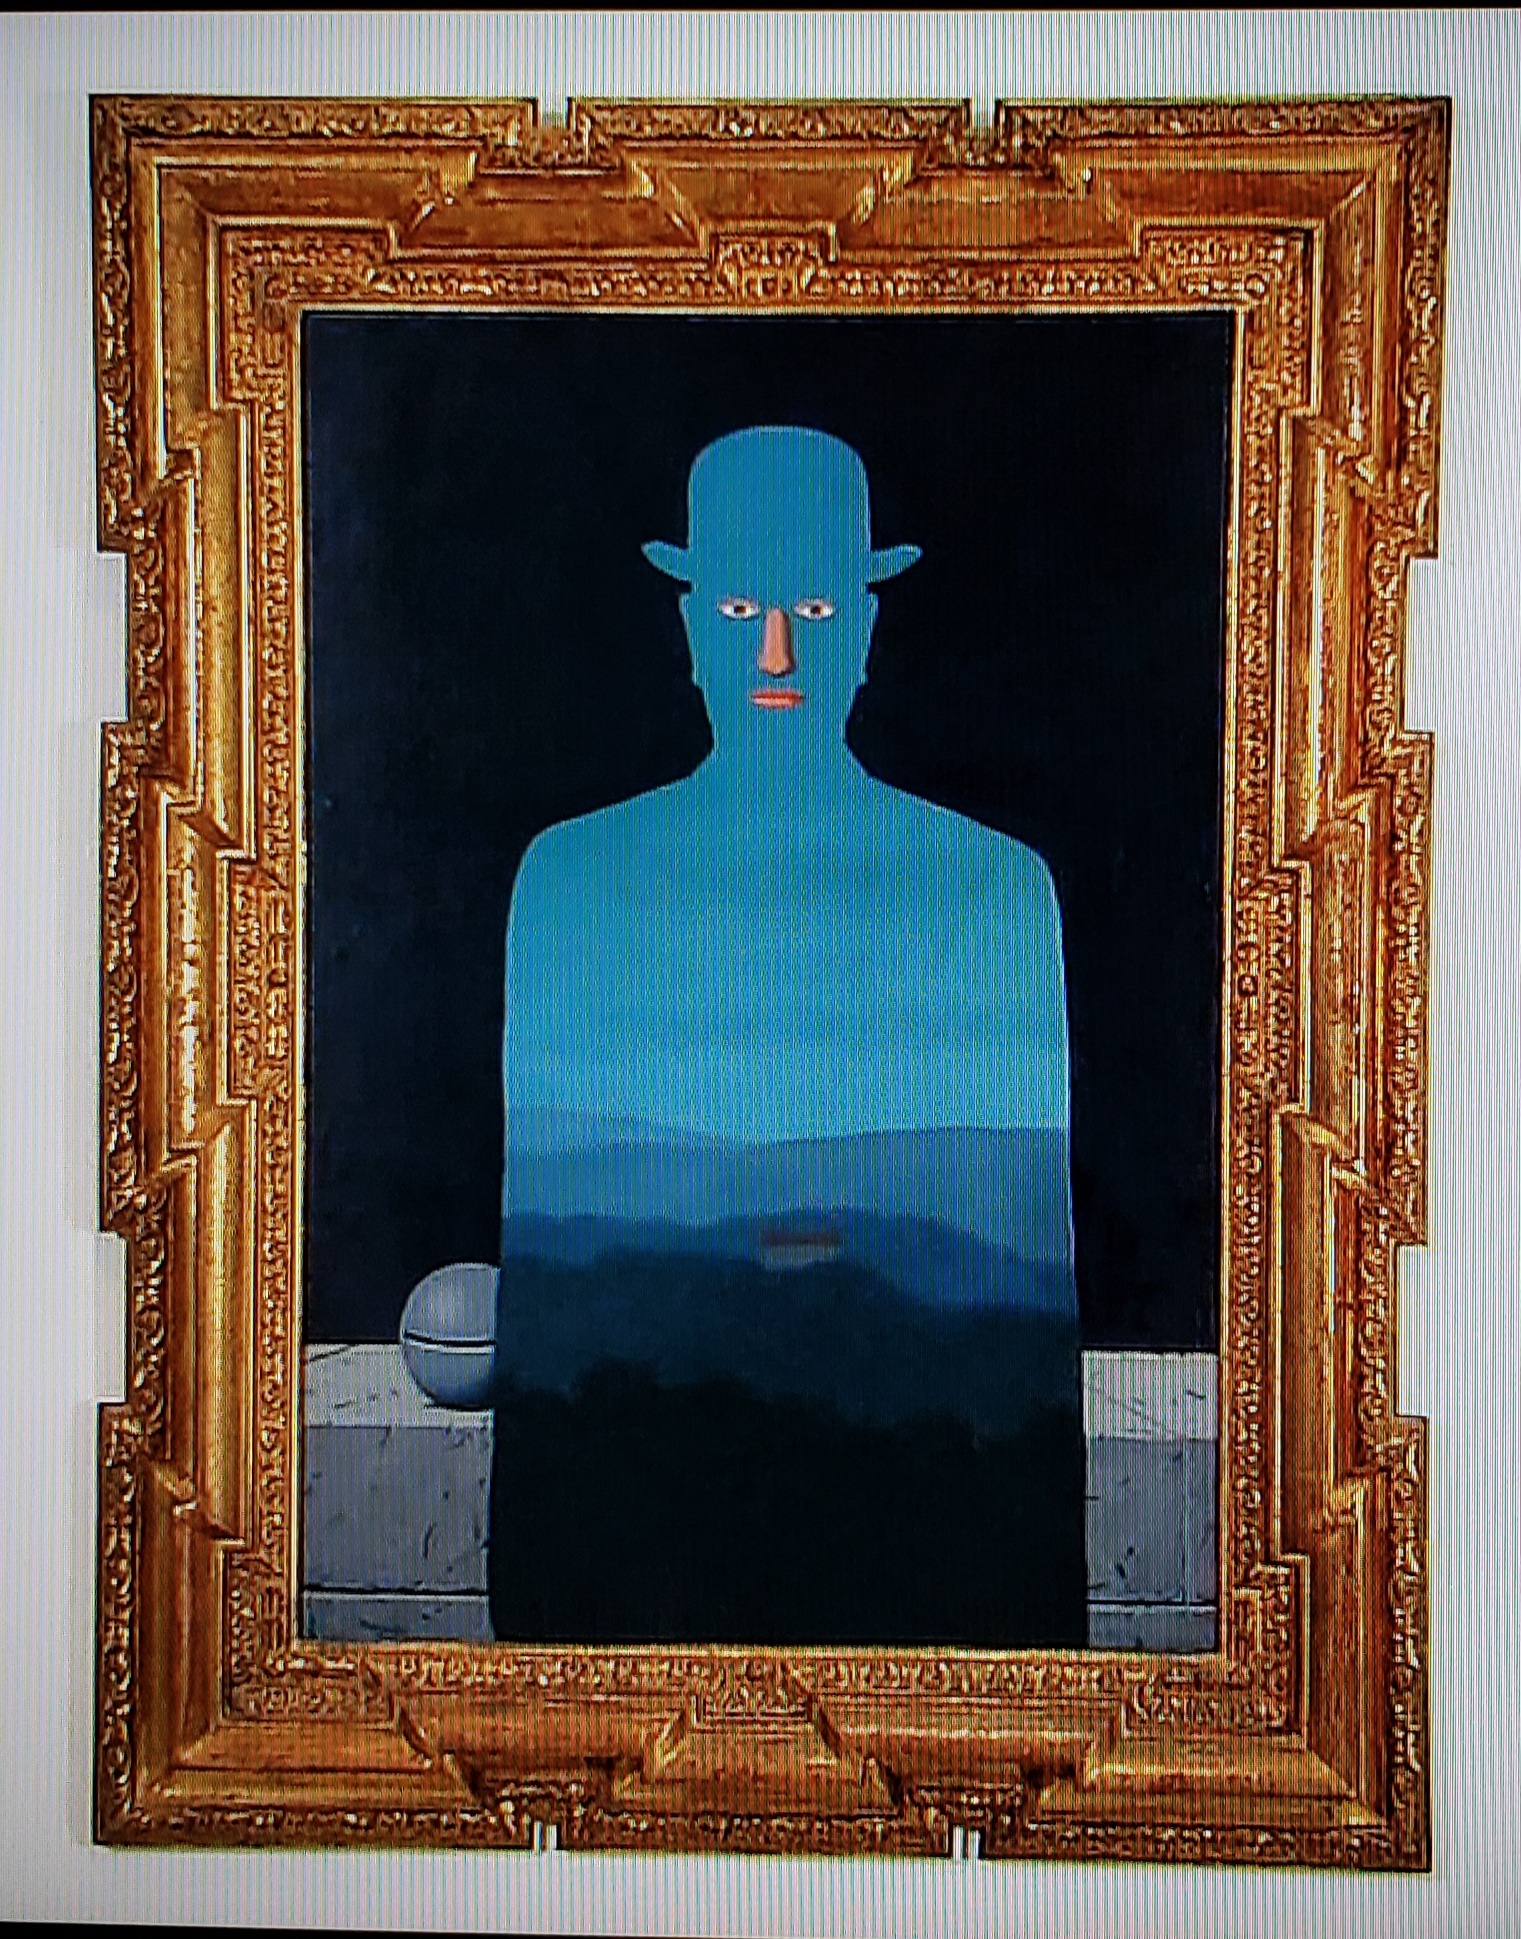 イメージの魔術師 (「王様の美術館」 ルネ・マグリット作 1966年 